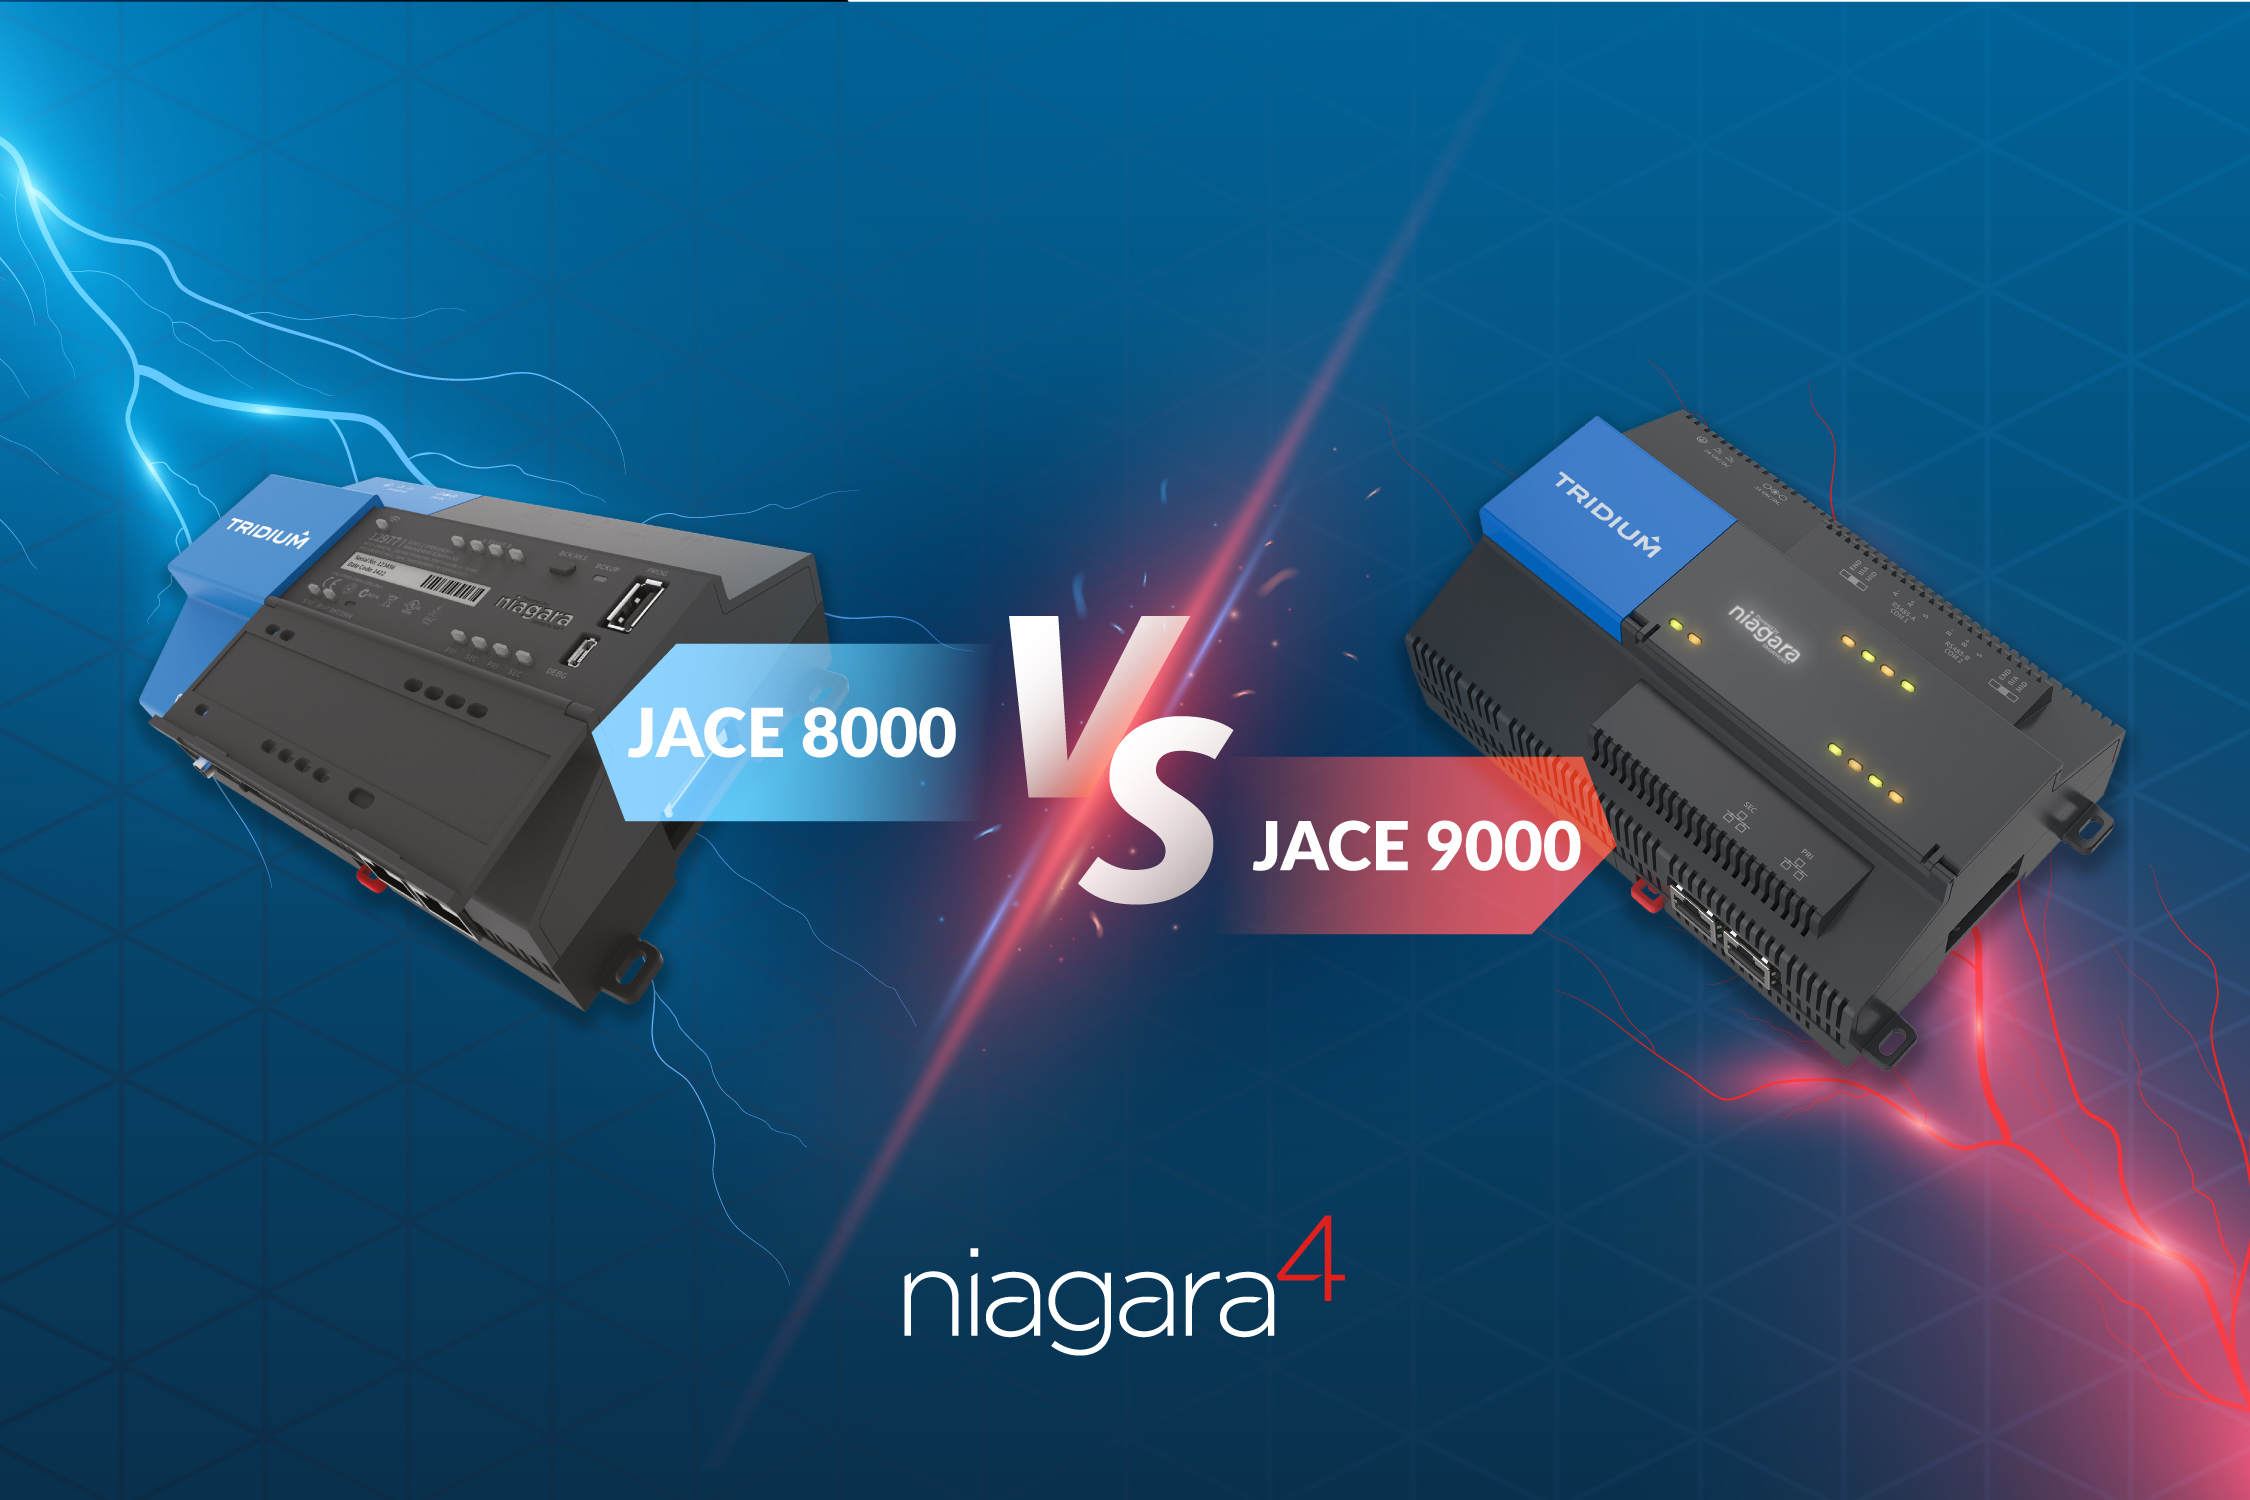 JACE 8000 vs JACE 9000